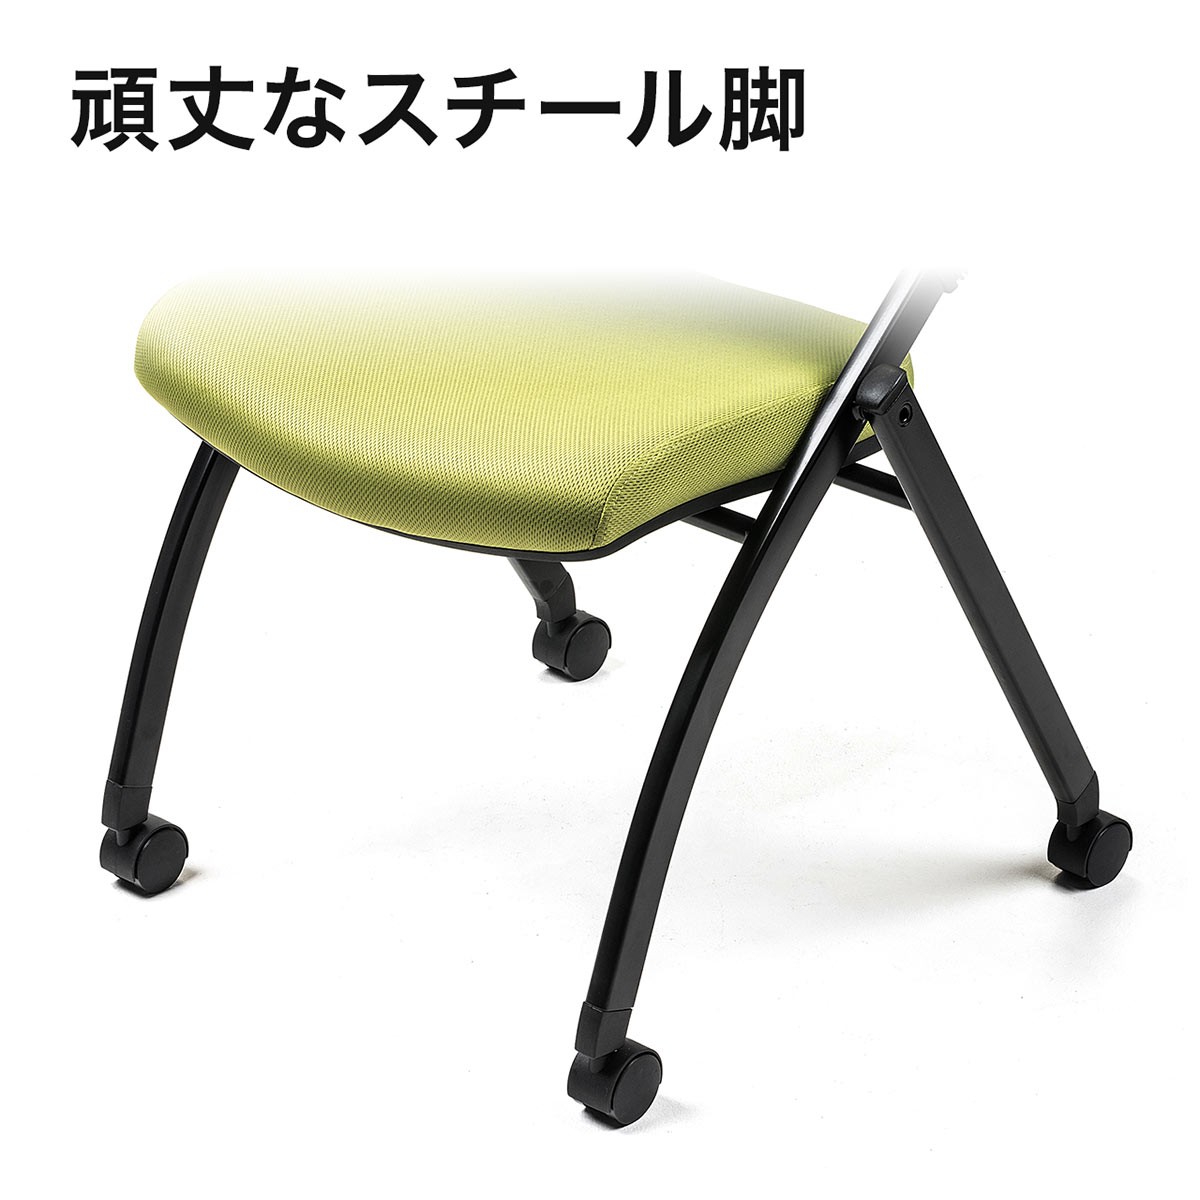 パイプ椅子 テーブル付き メモ台付き 折りたたみ椅子 会議椅子 